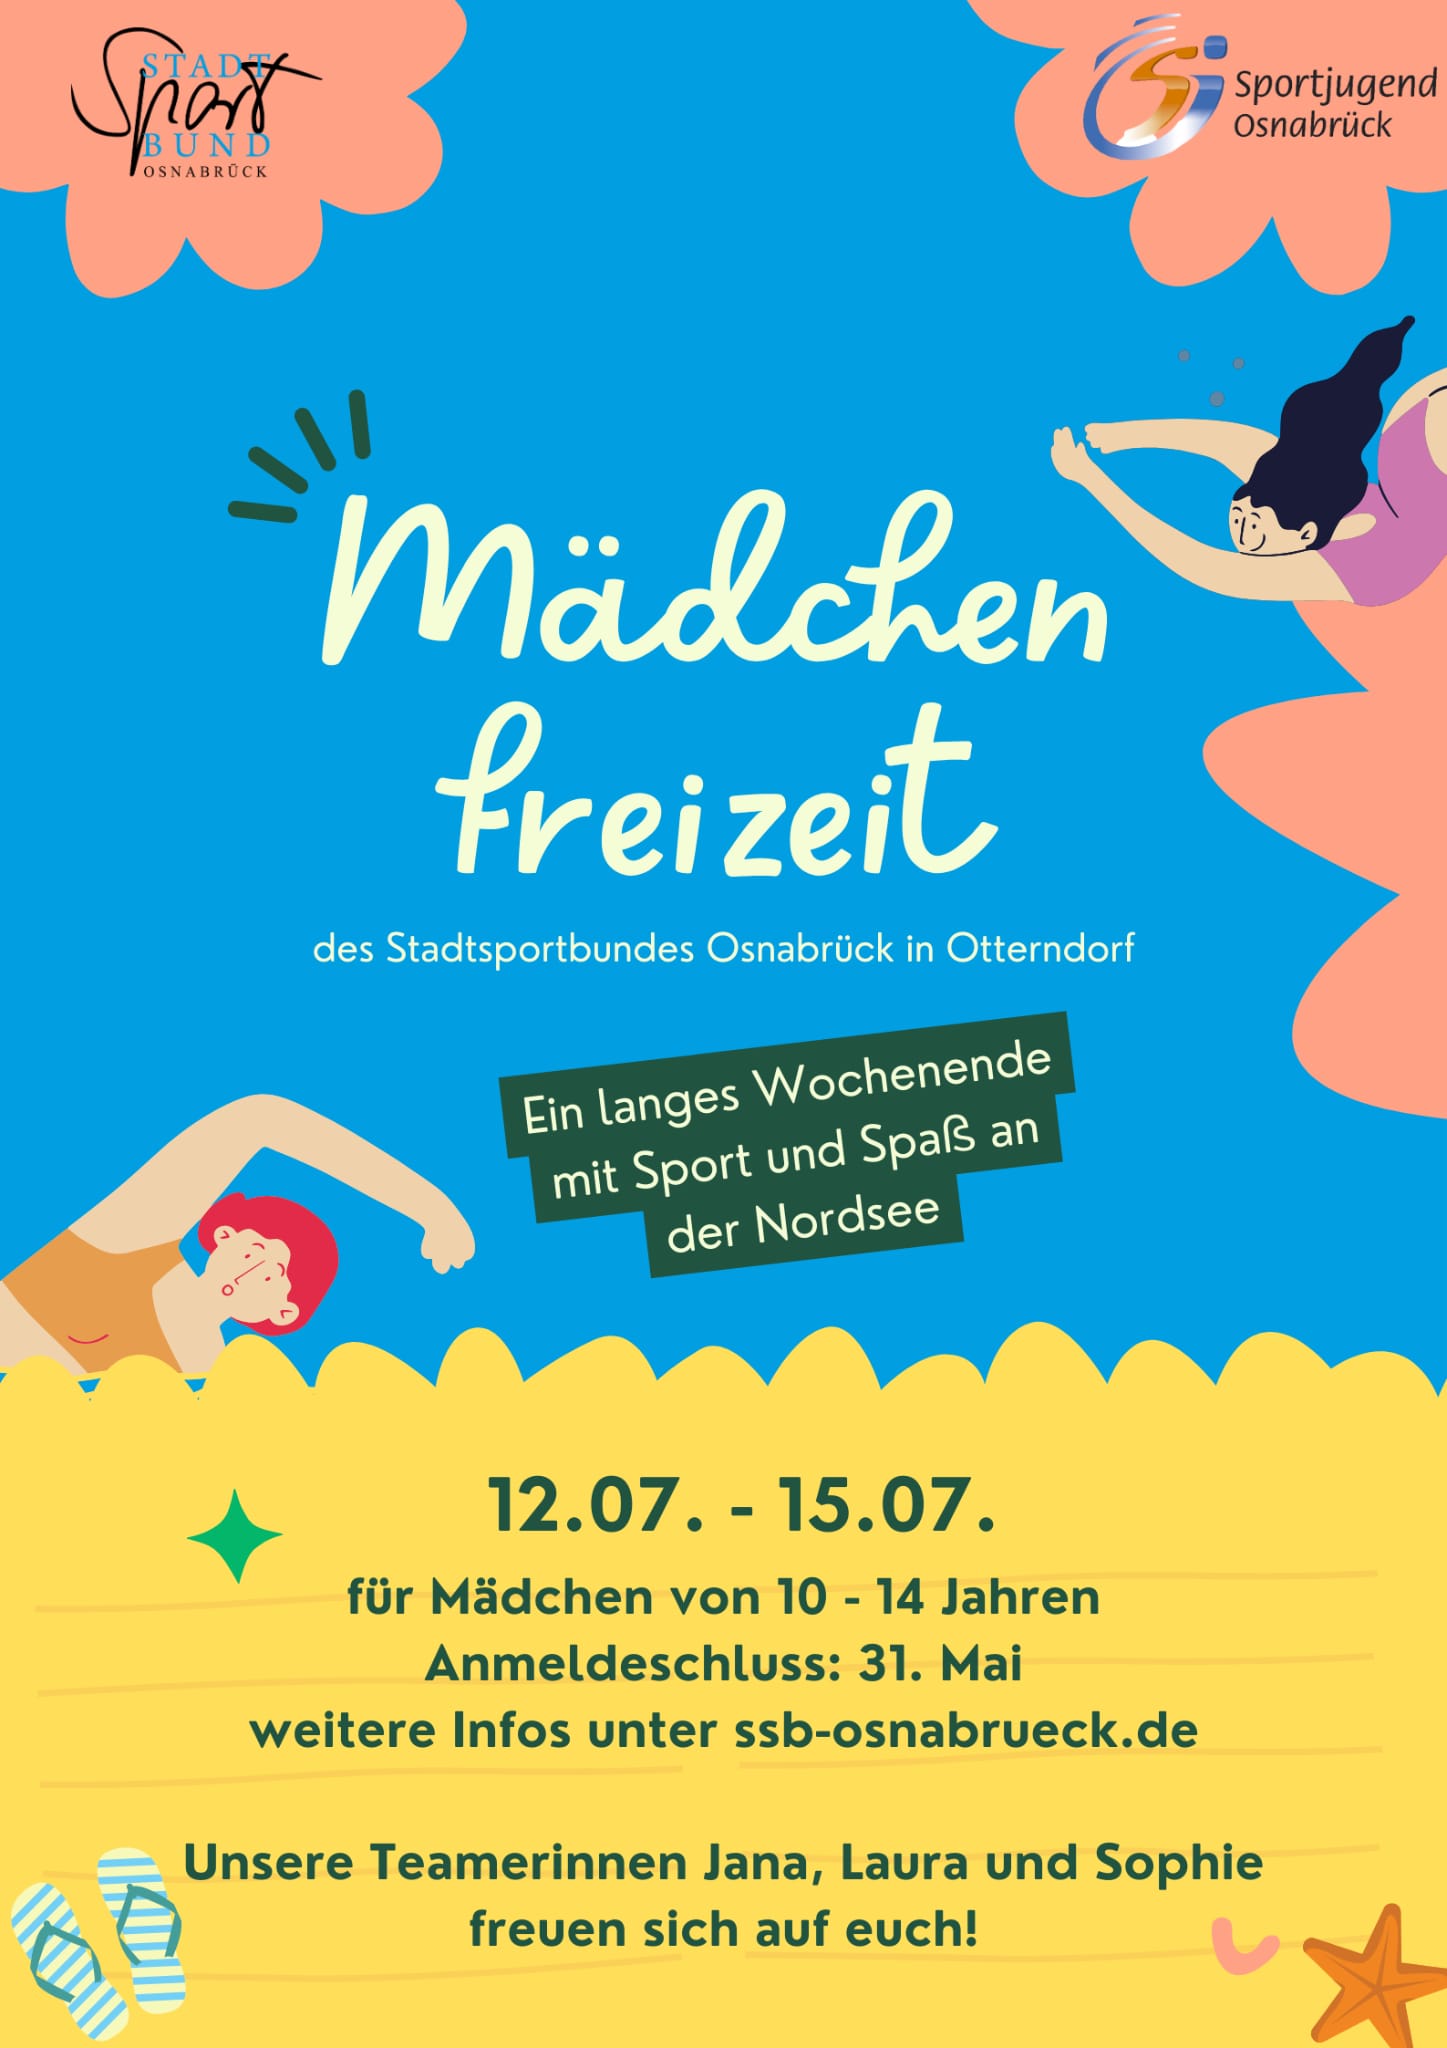 Mädchenfreizeit des Stadtsportbundes in Otterndorf